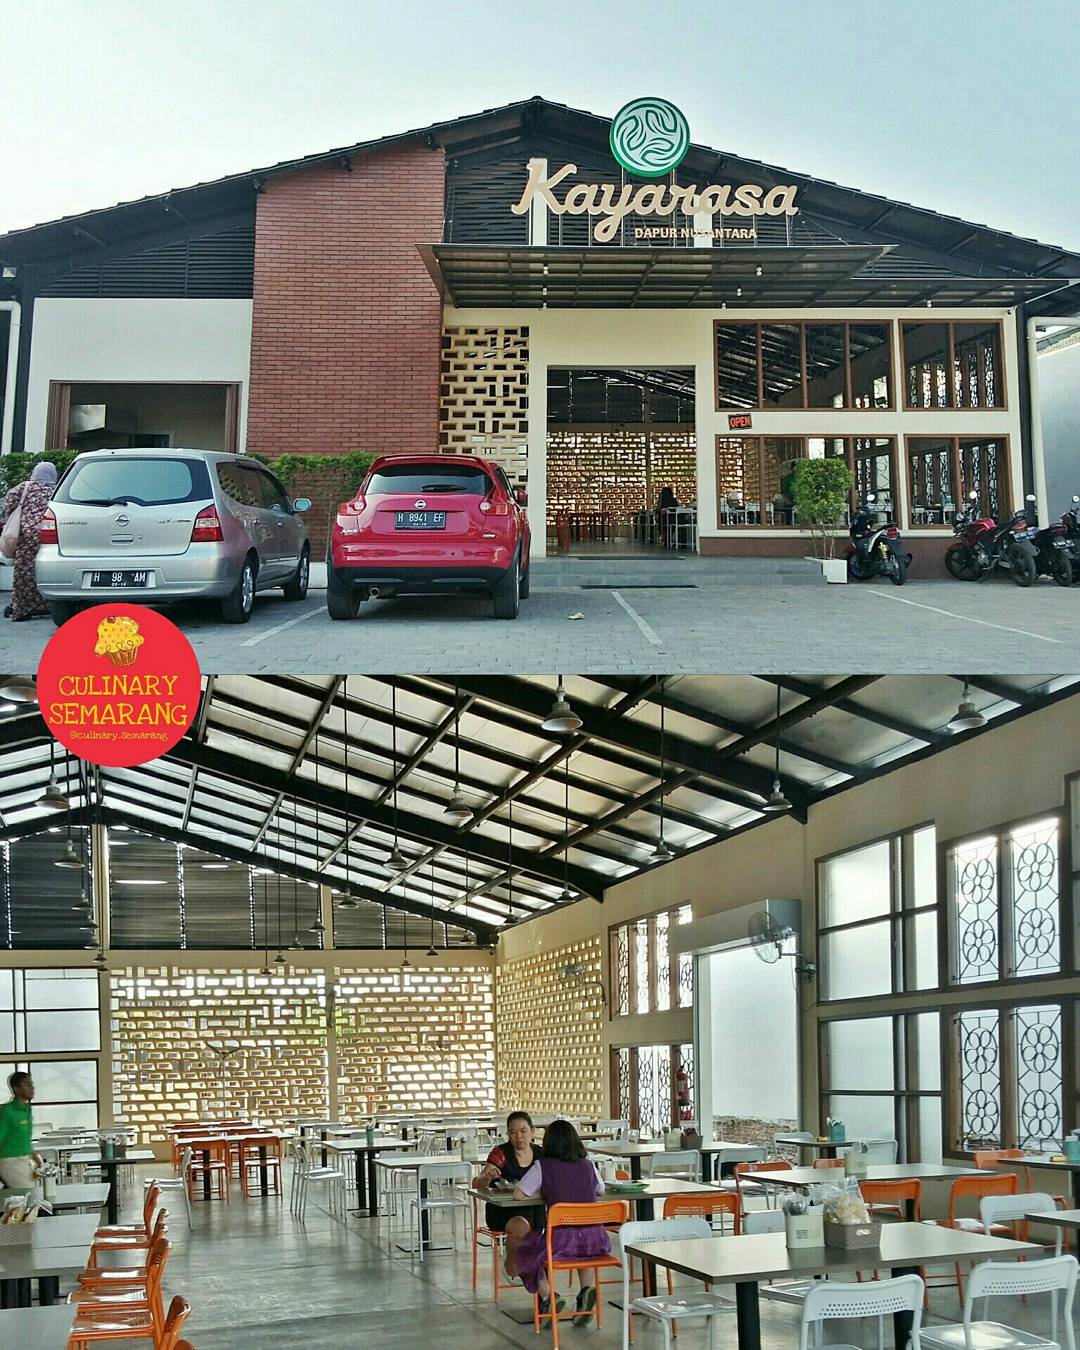 Tempat Buka Bersama Di Semarang Kayarasa Dapur Nusantara Image From @culinary_semarang